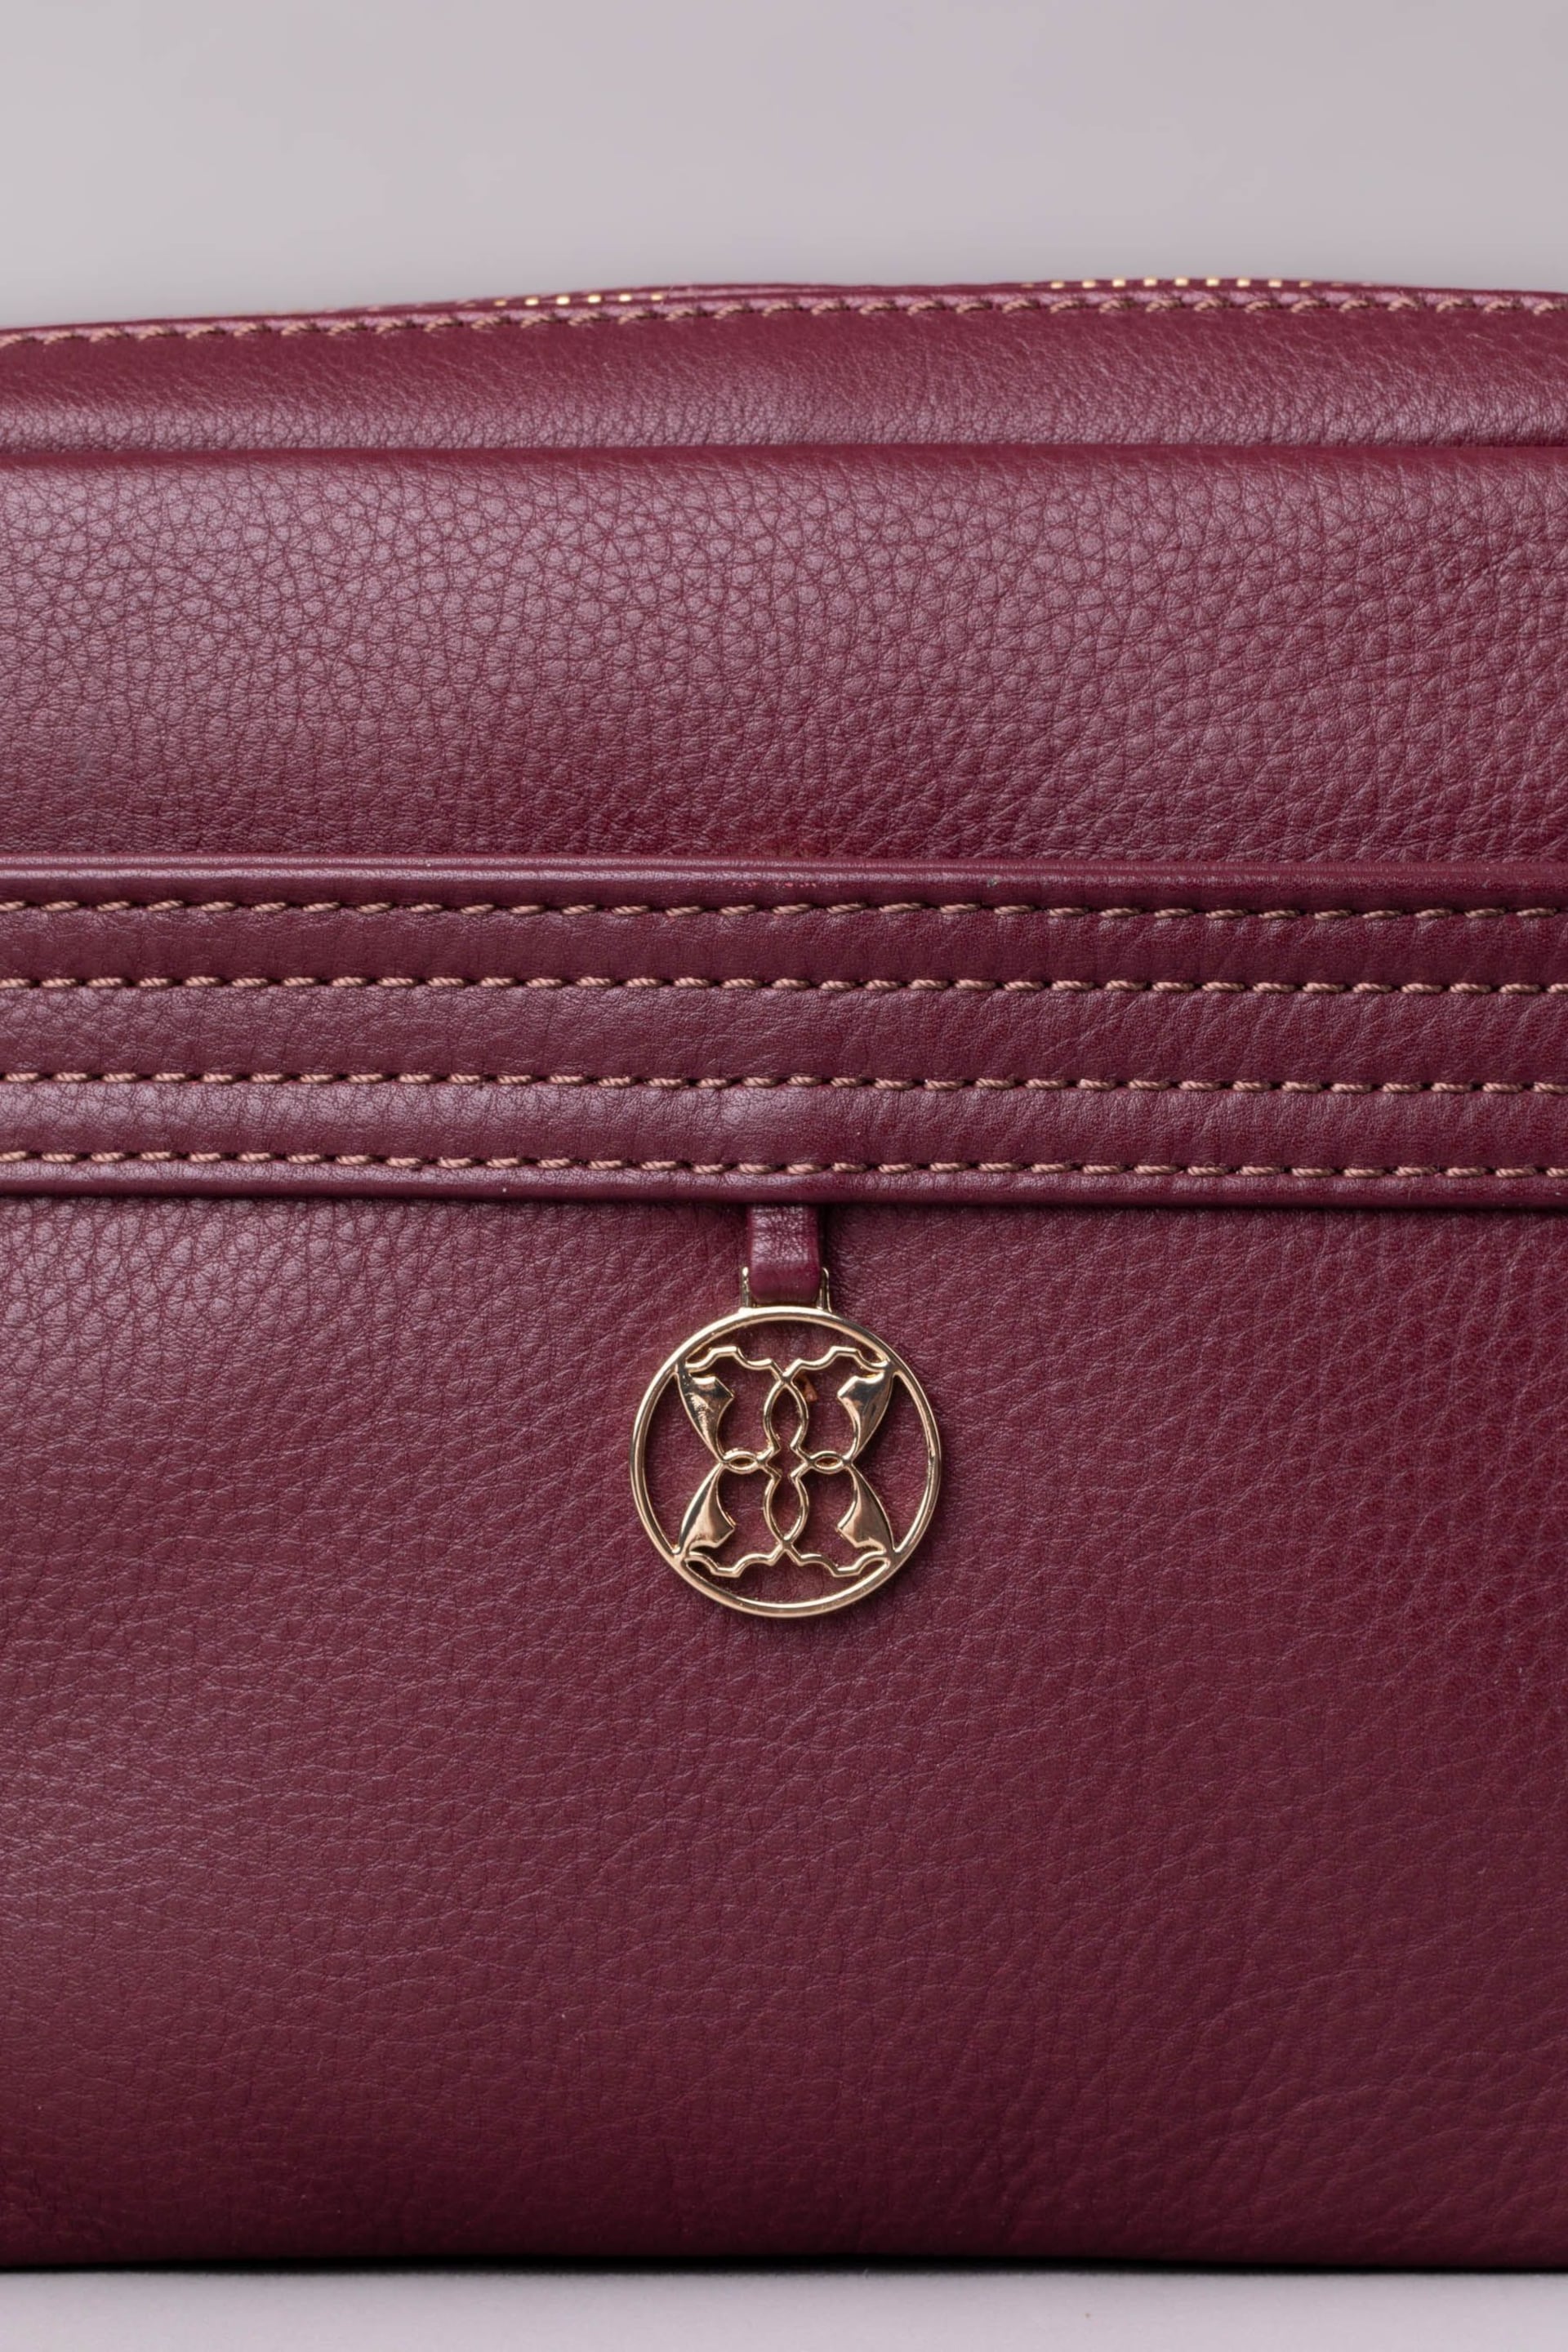 Lakeland Leather Purple Cartmel Boxy Leather Cross-Body Bag - Image 3 of 3